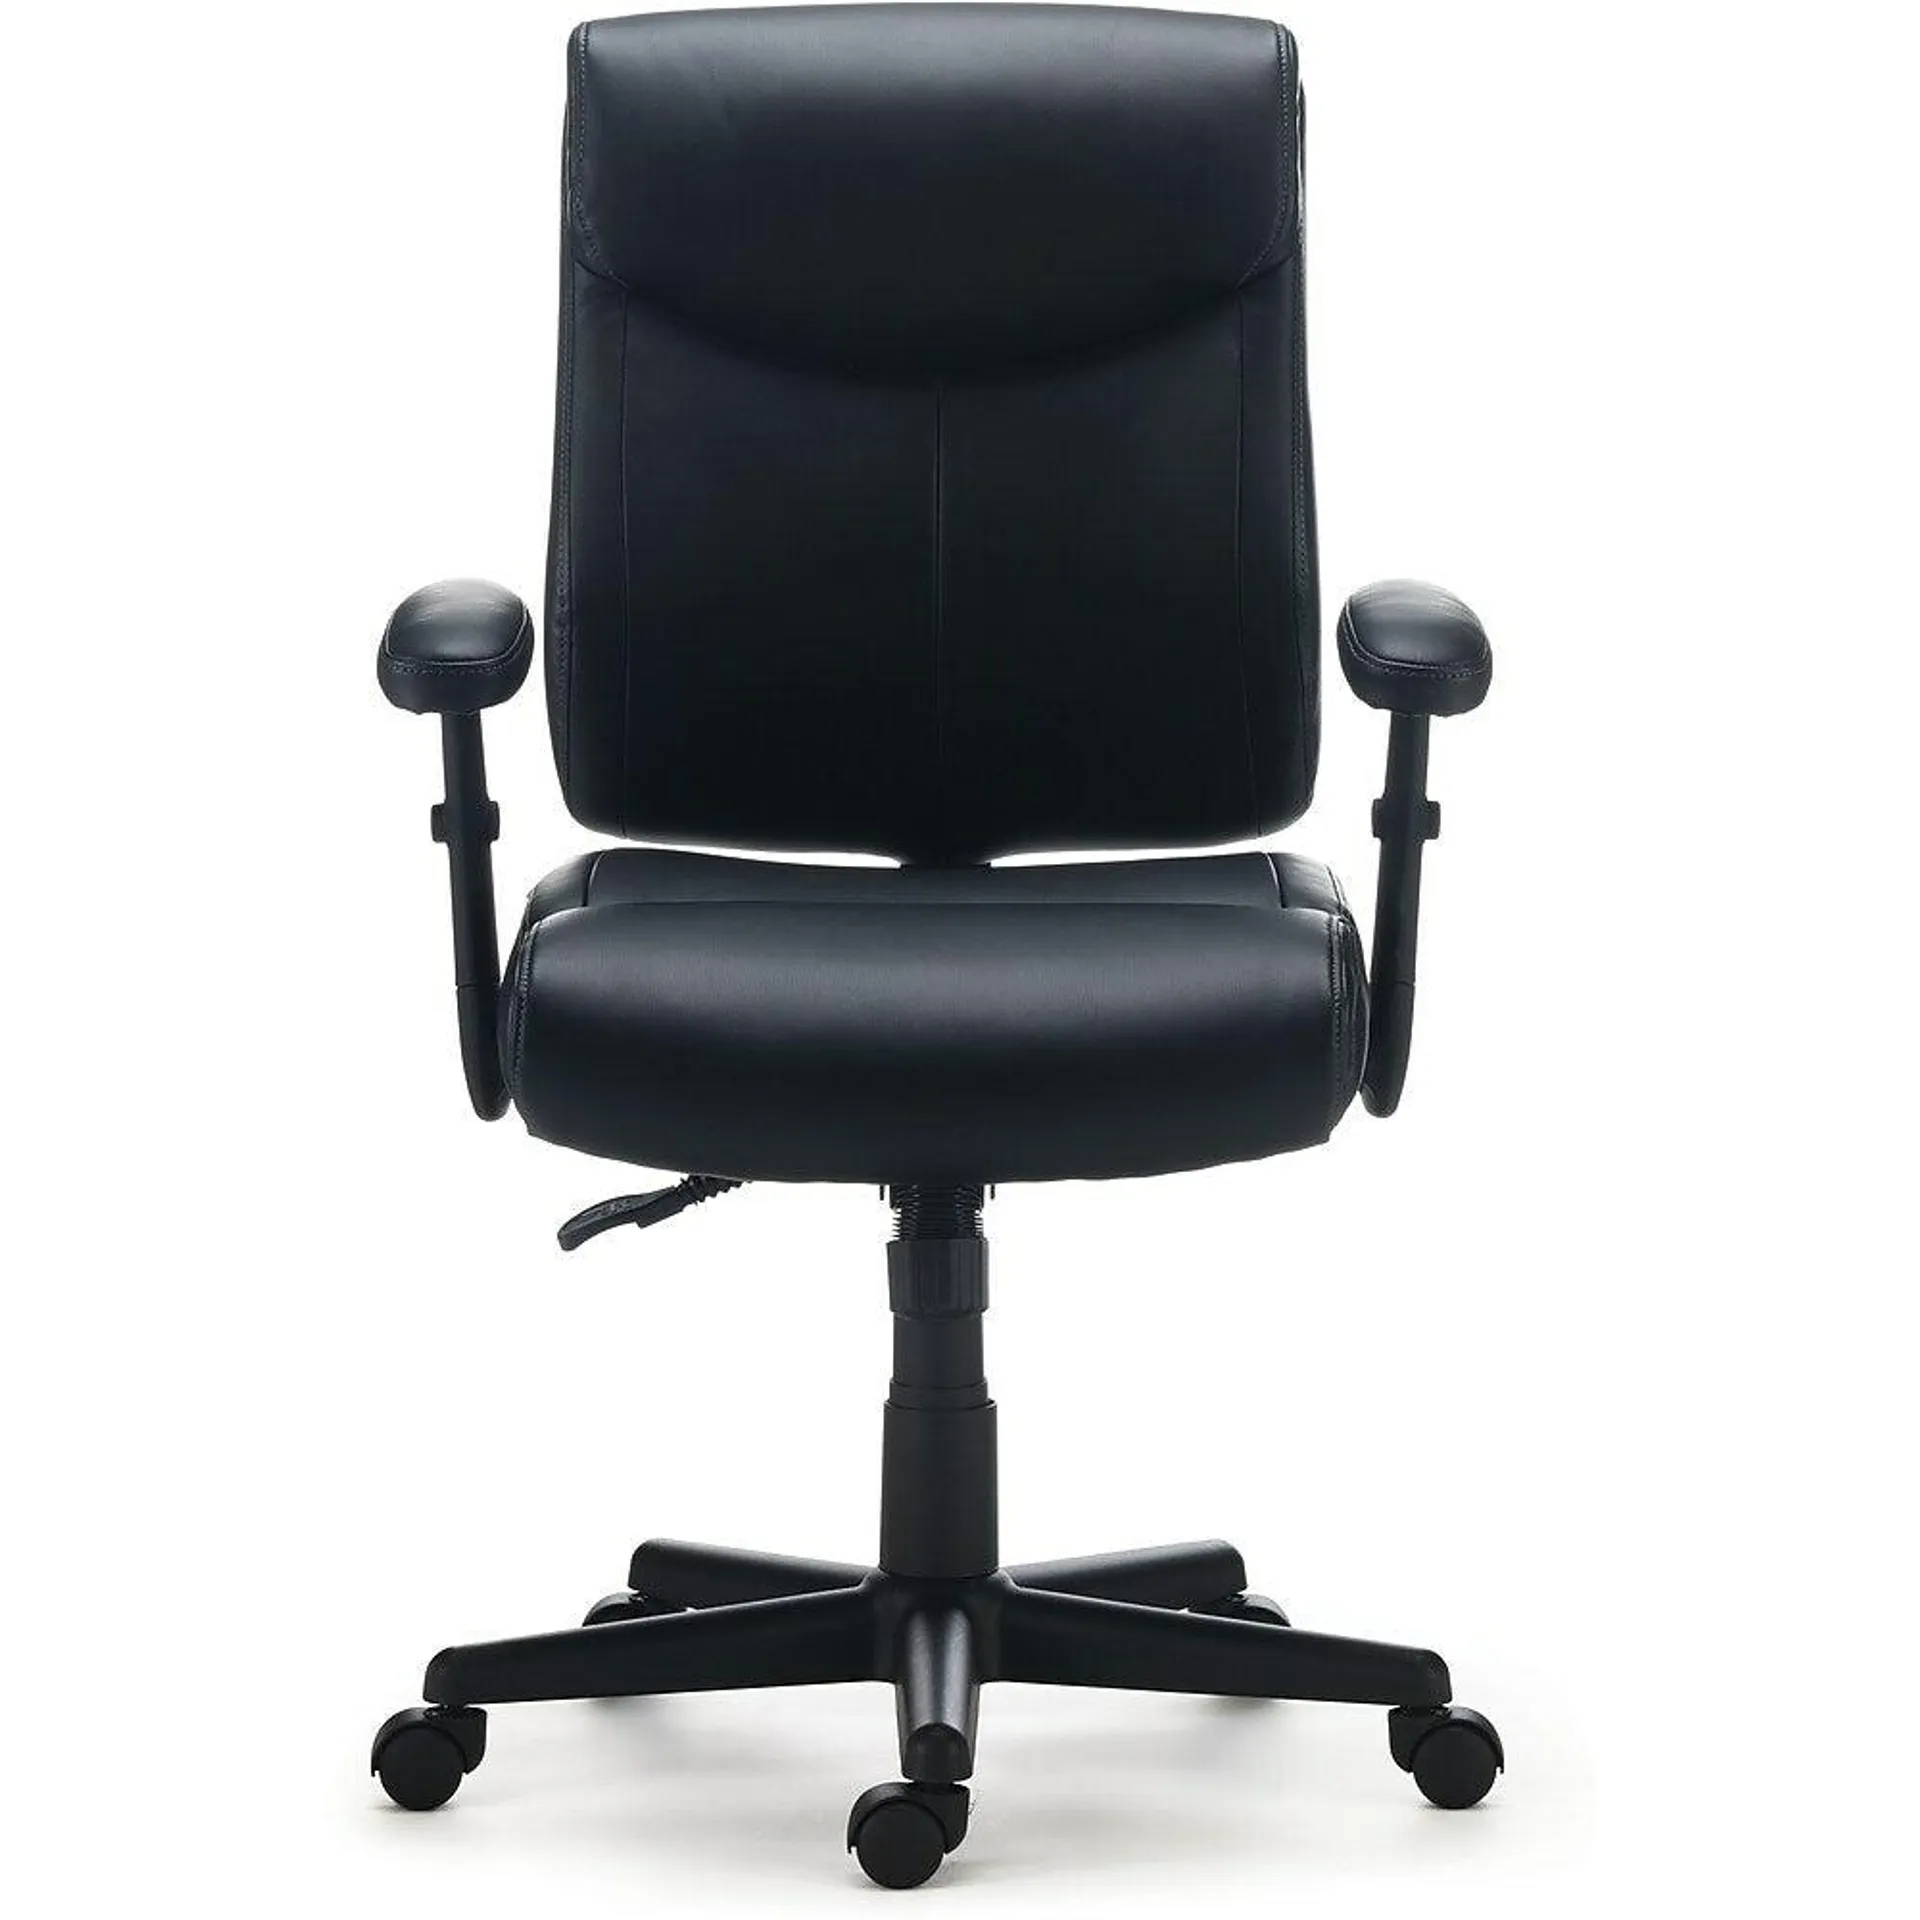 Staples Tillcott Luxura Task Chair - Black